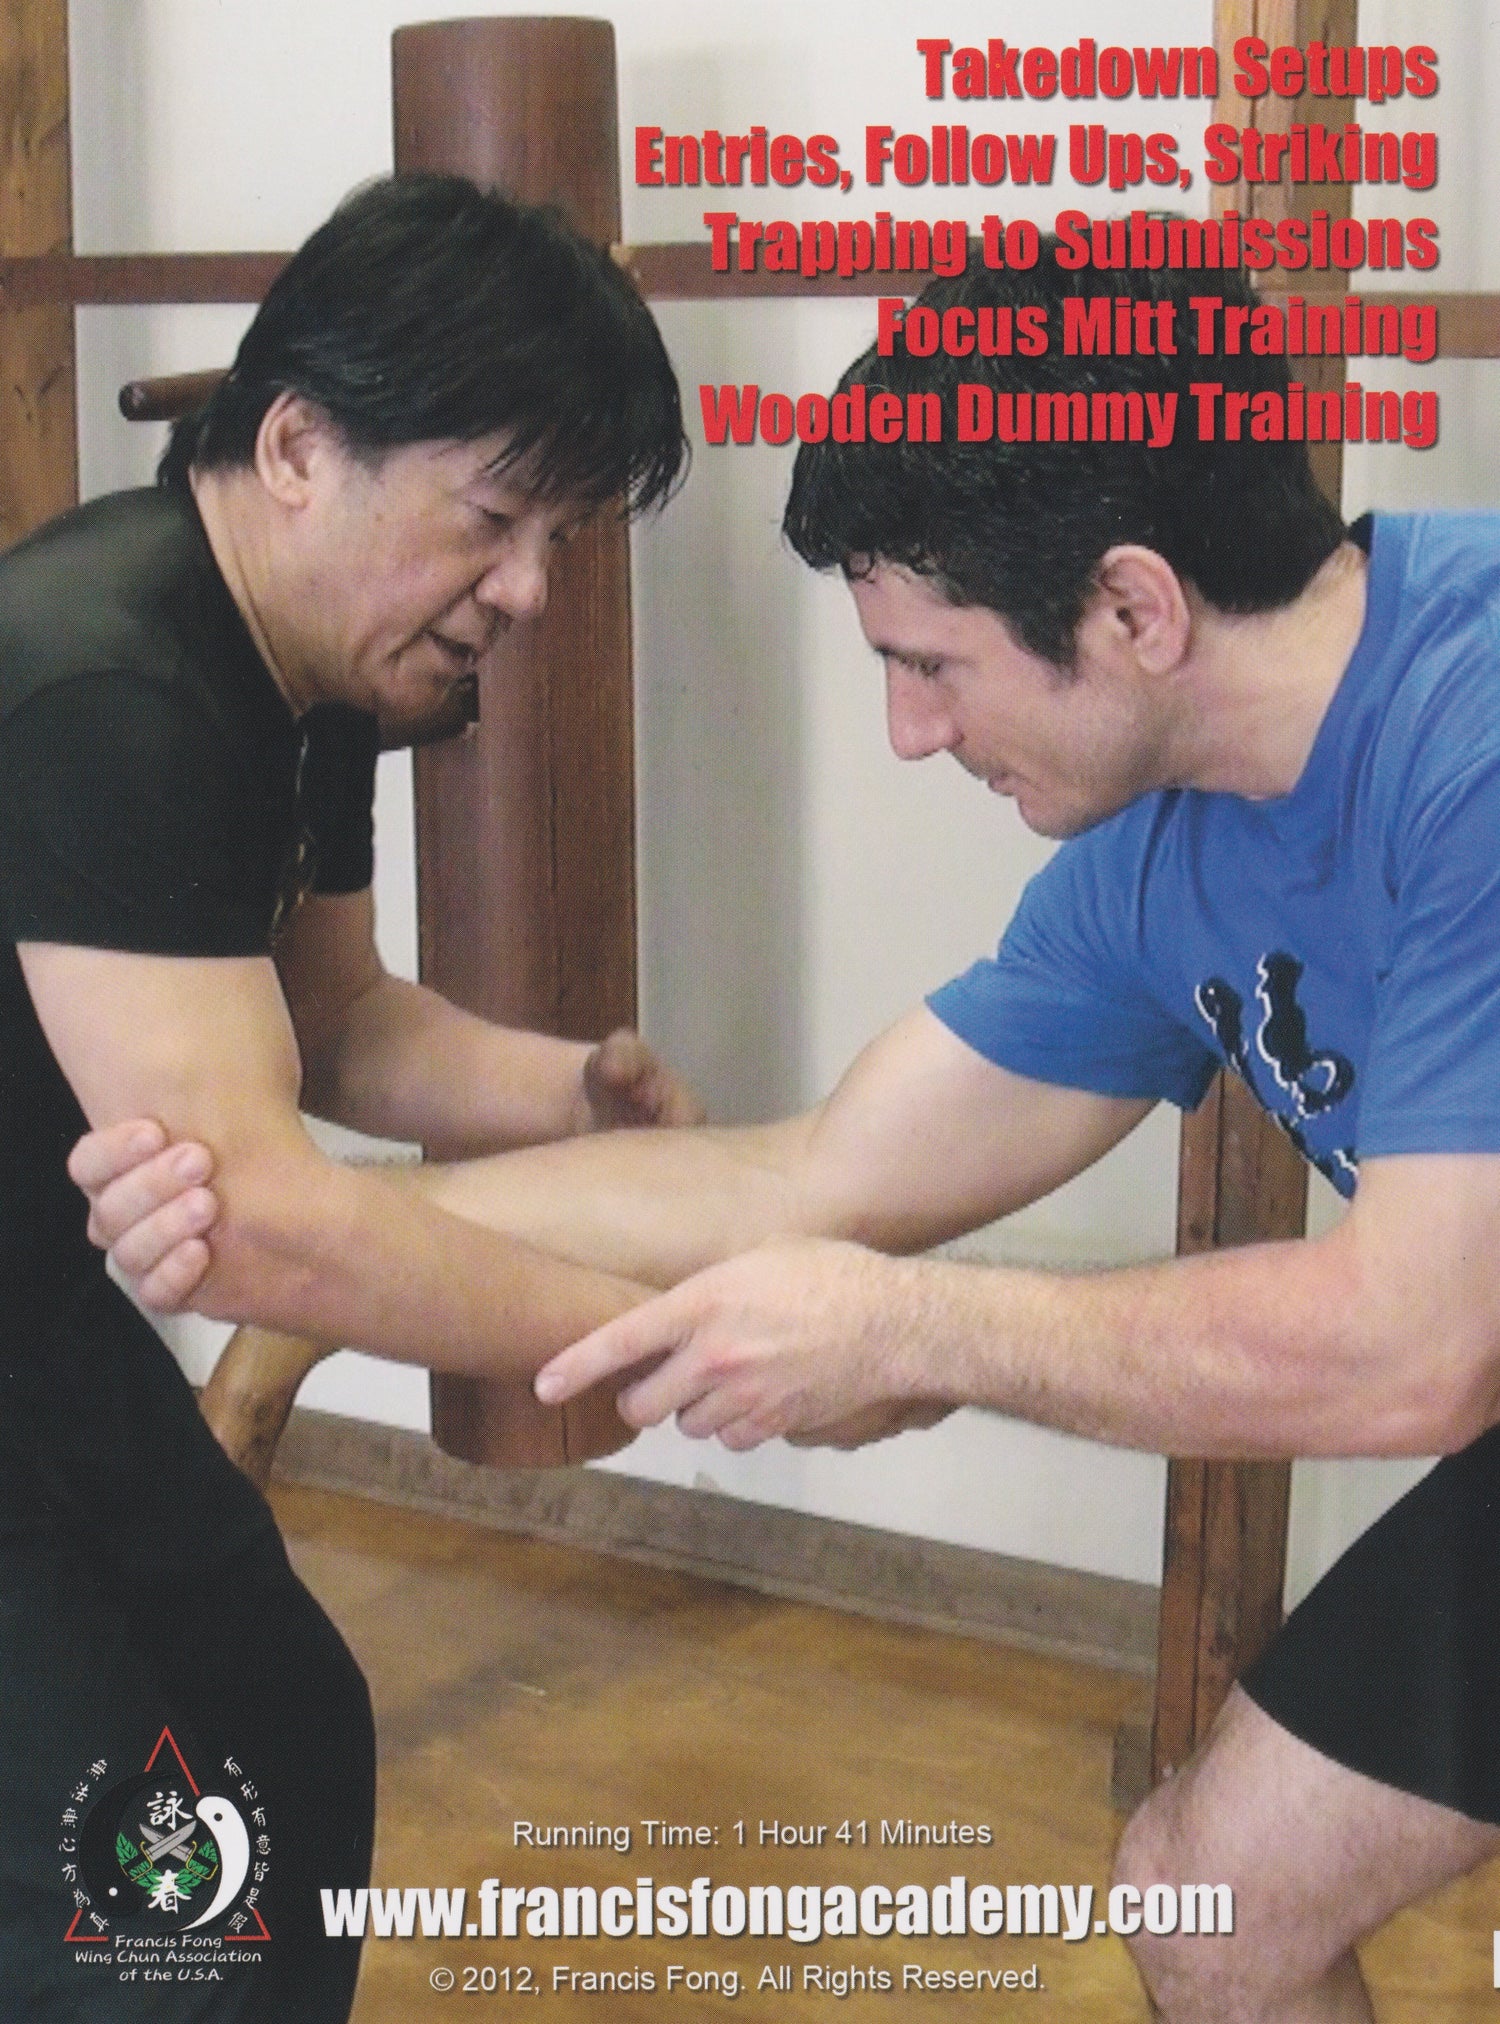 DVD de introducción al Wing Chun para MMA y defensa personal de Francis Fong